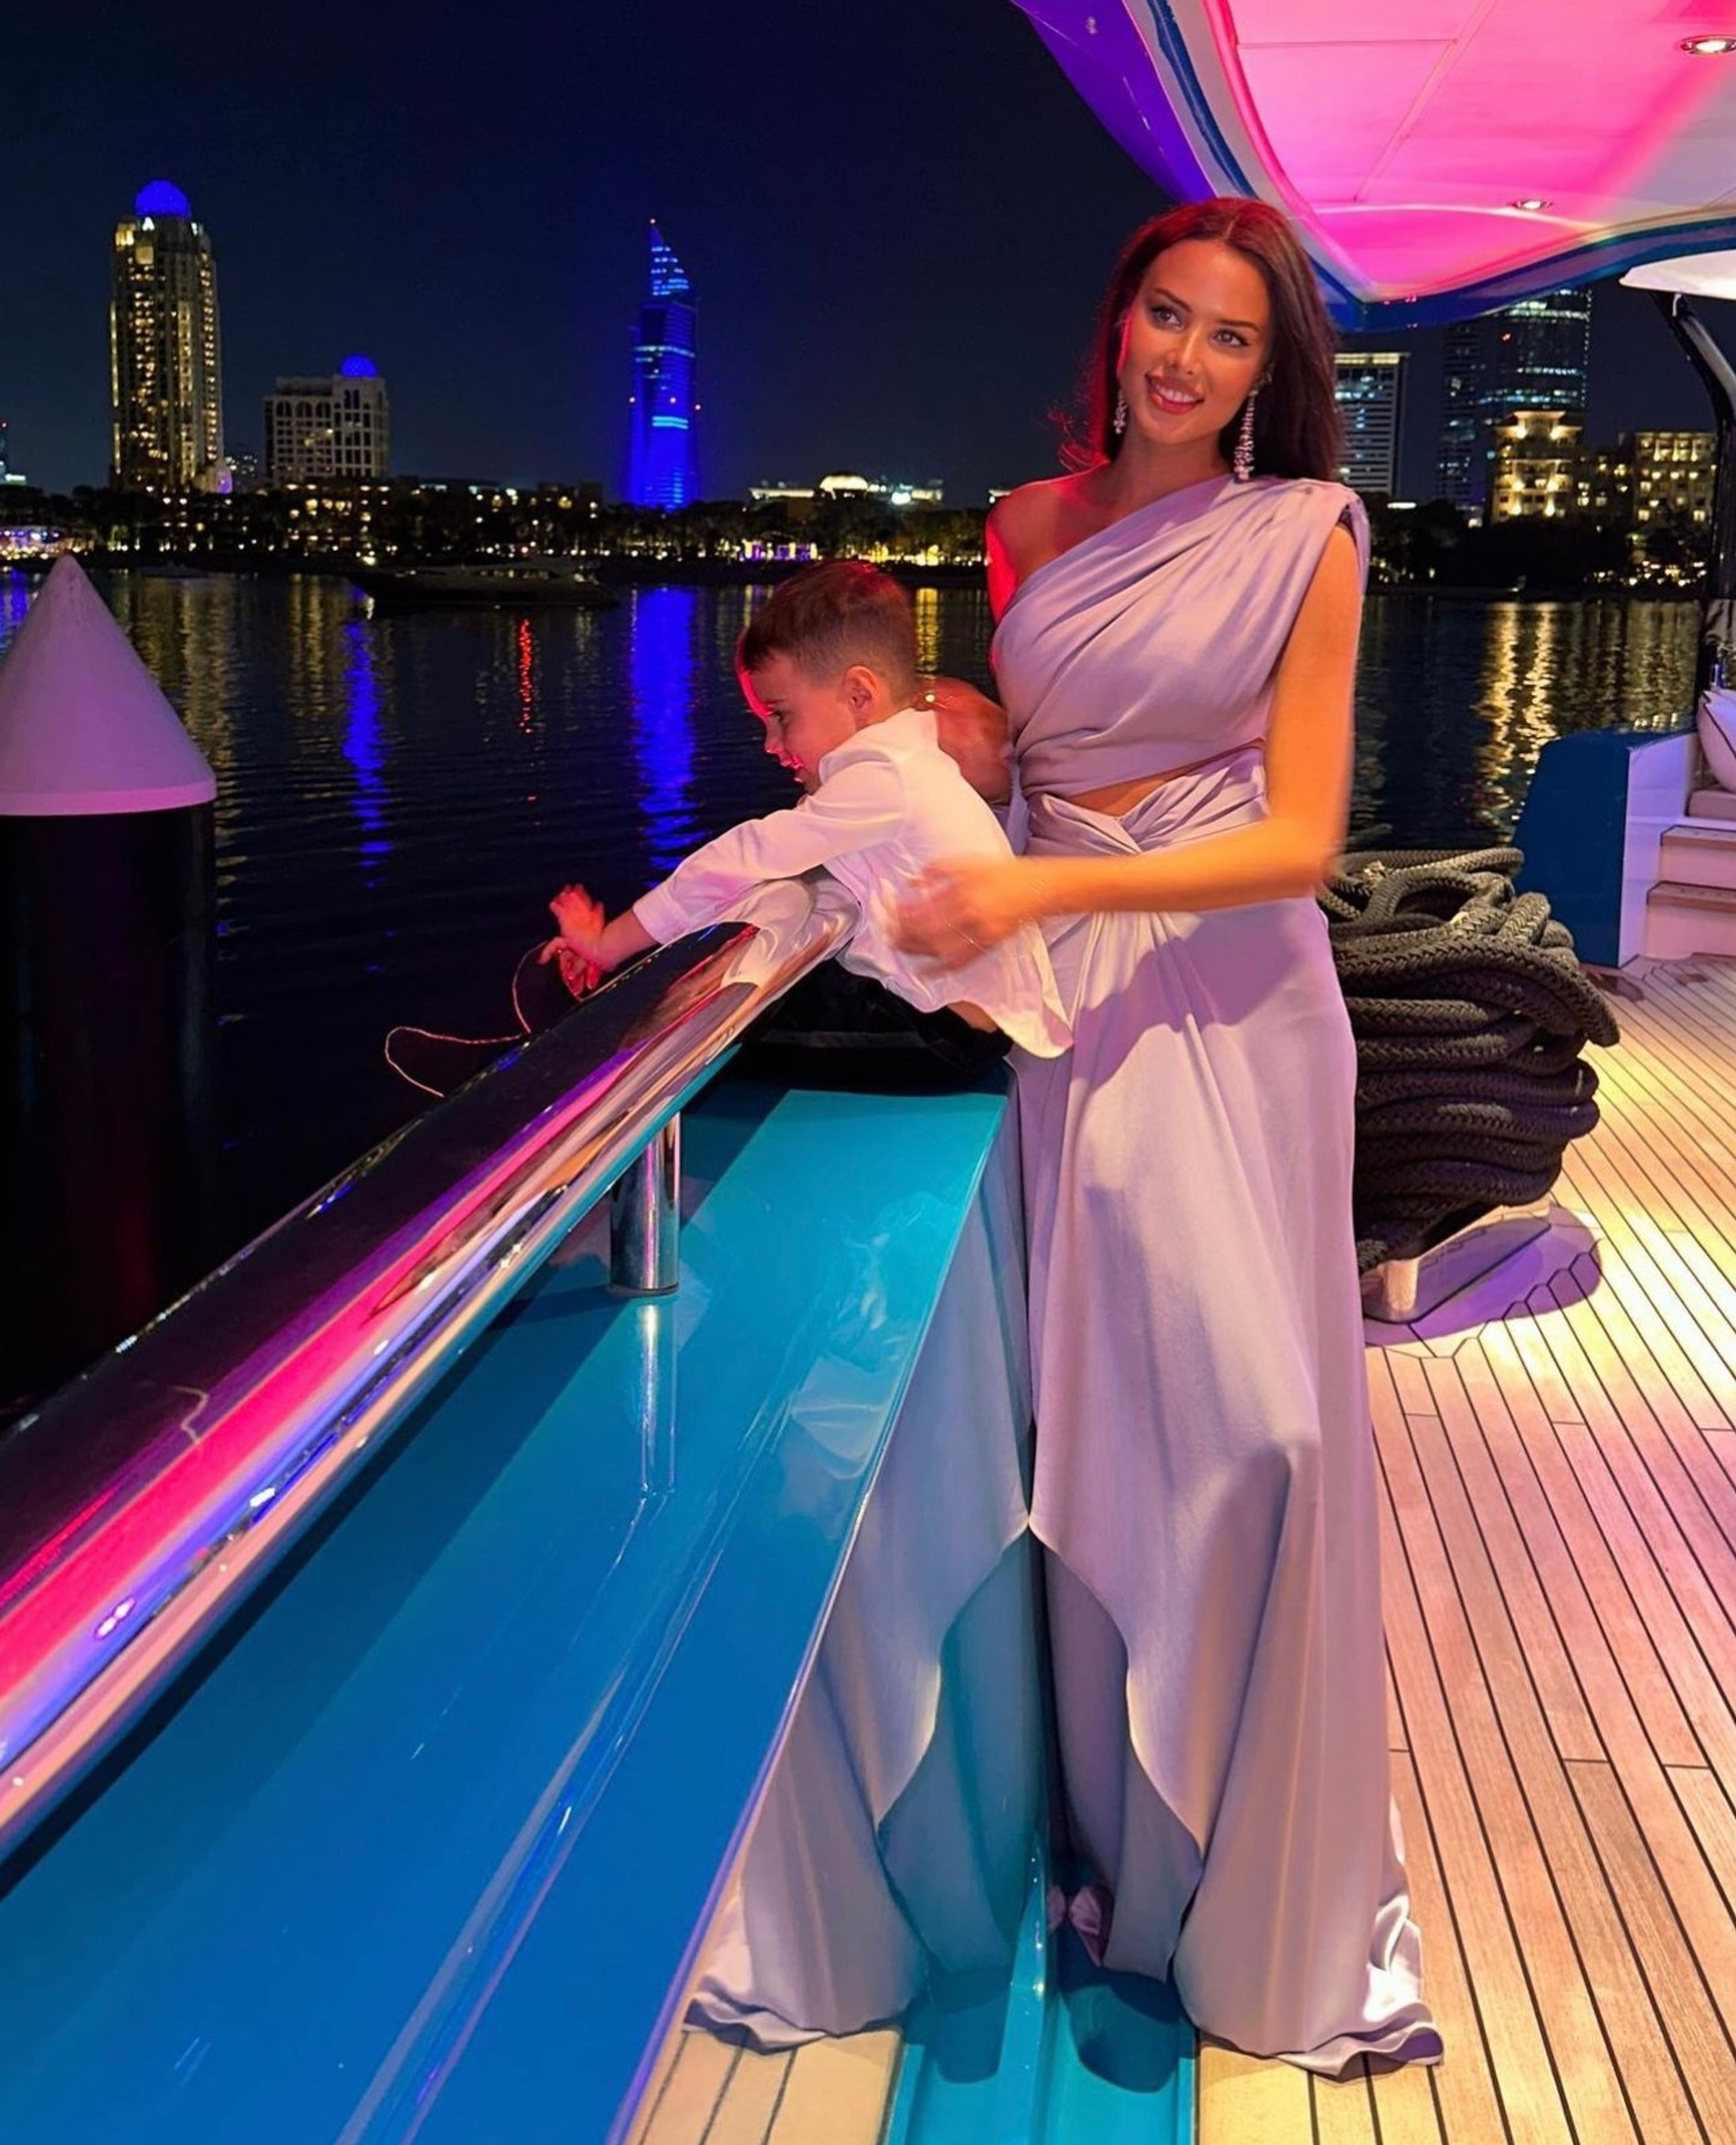 Анастасия Решетова с сыном во время празднования Нового года в Дубае
Фото: Инстаграм (запрещен в РФ)